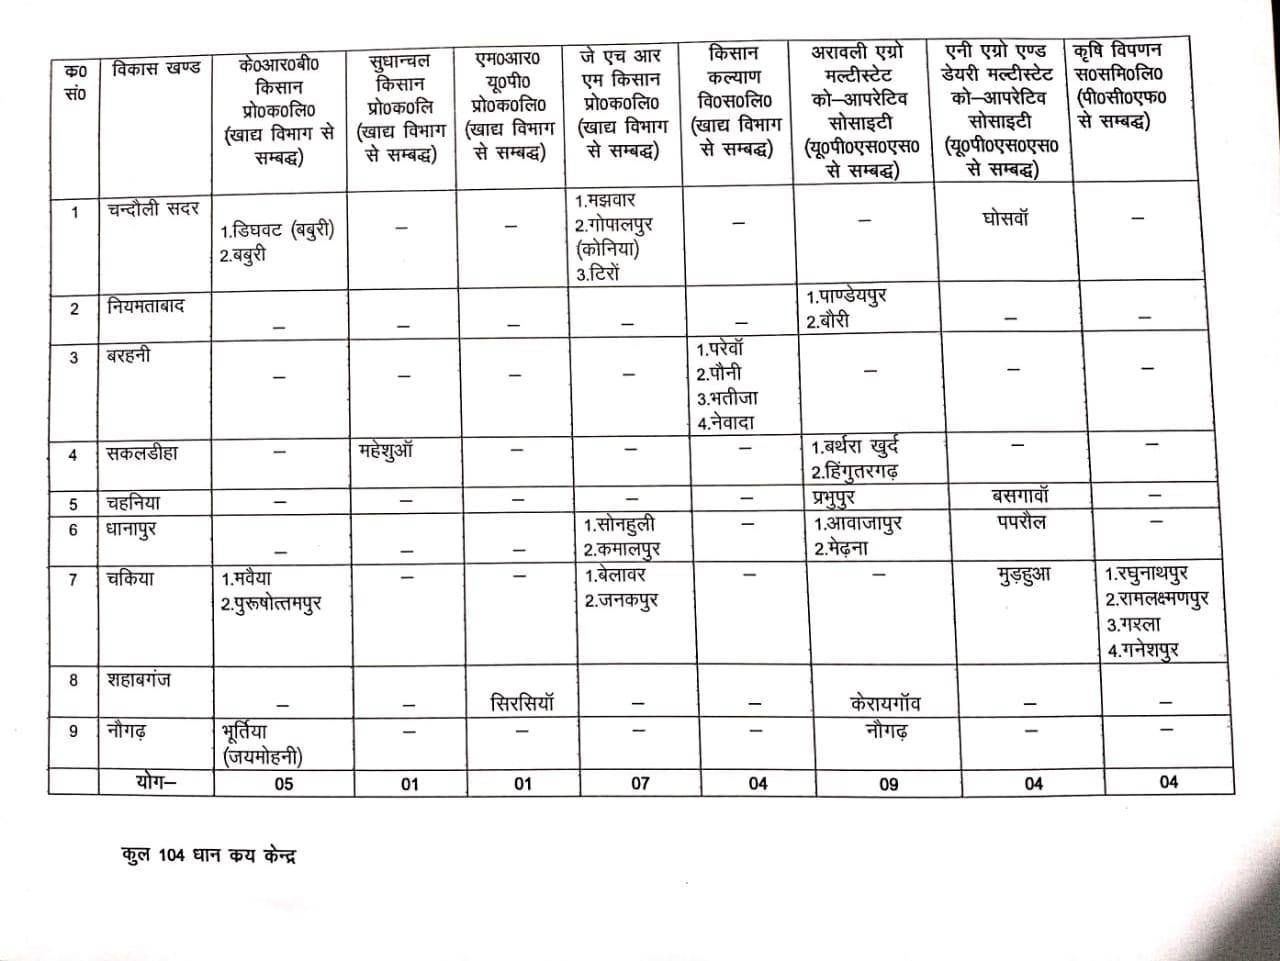 चकिया तहसील में इन केंद्रों पर होगी धान की खरीद, तहसील प्रशासन ने उपलब्ध कराई सूची